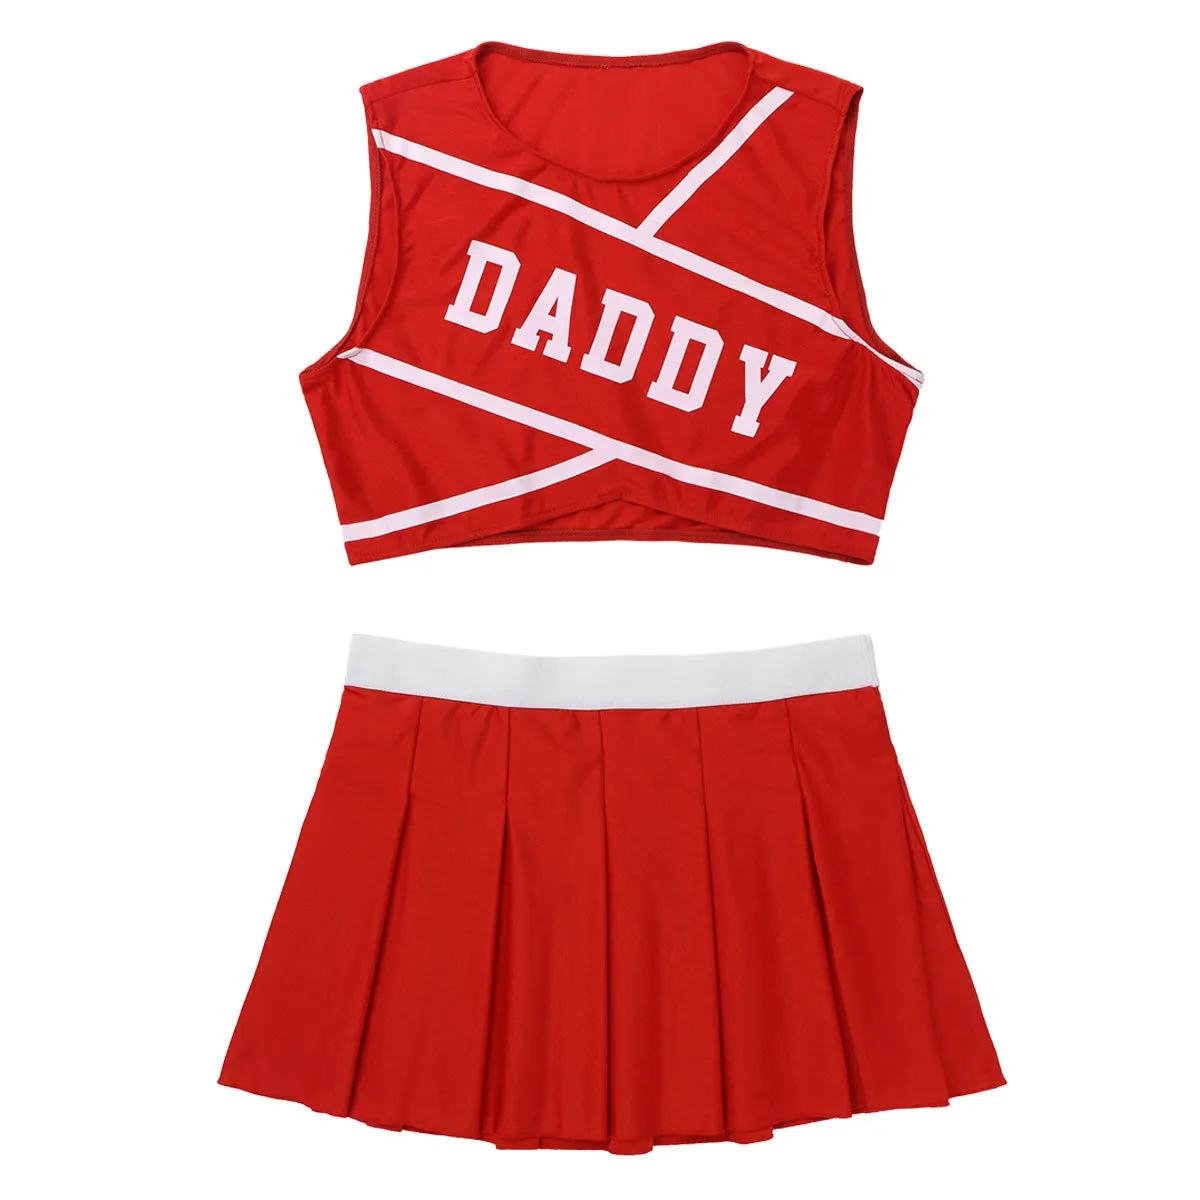 IITIIM Zestawy damskie dorosłych Czarowna Cheerleaderka Cosplay Scena Kostium Dancewear Hot Konkurs Crop Top z mini plisowaną spódnicą T200702